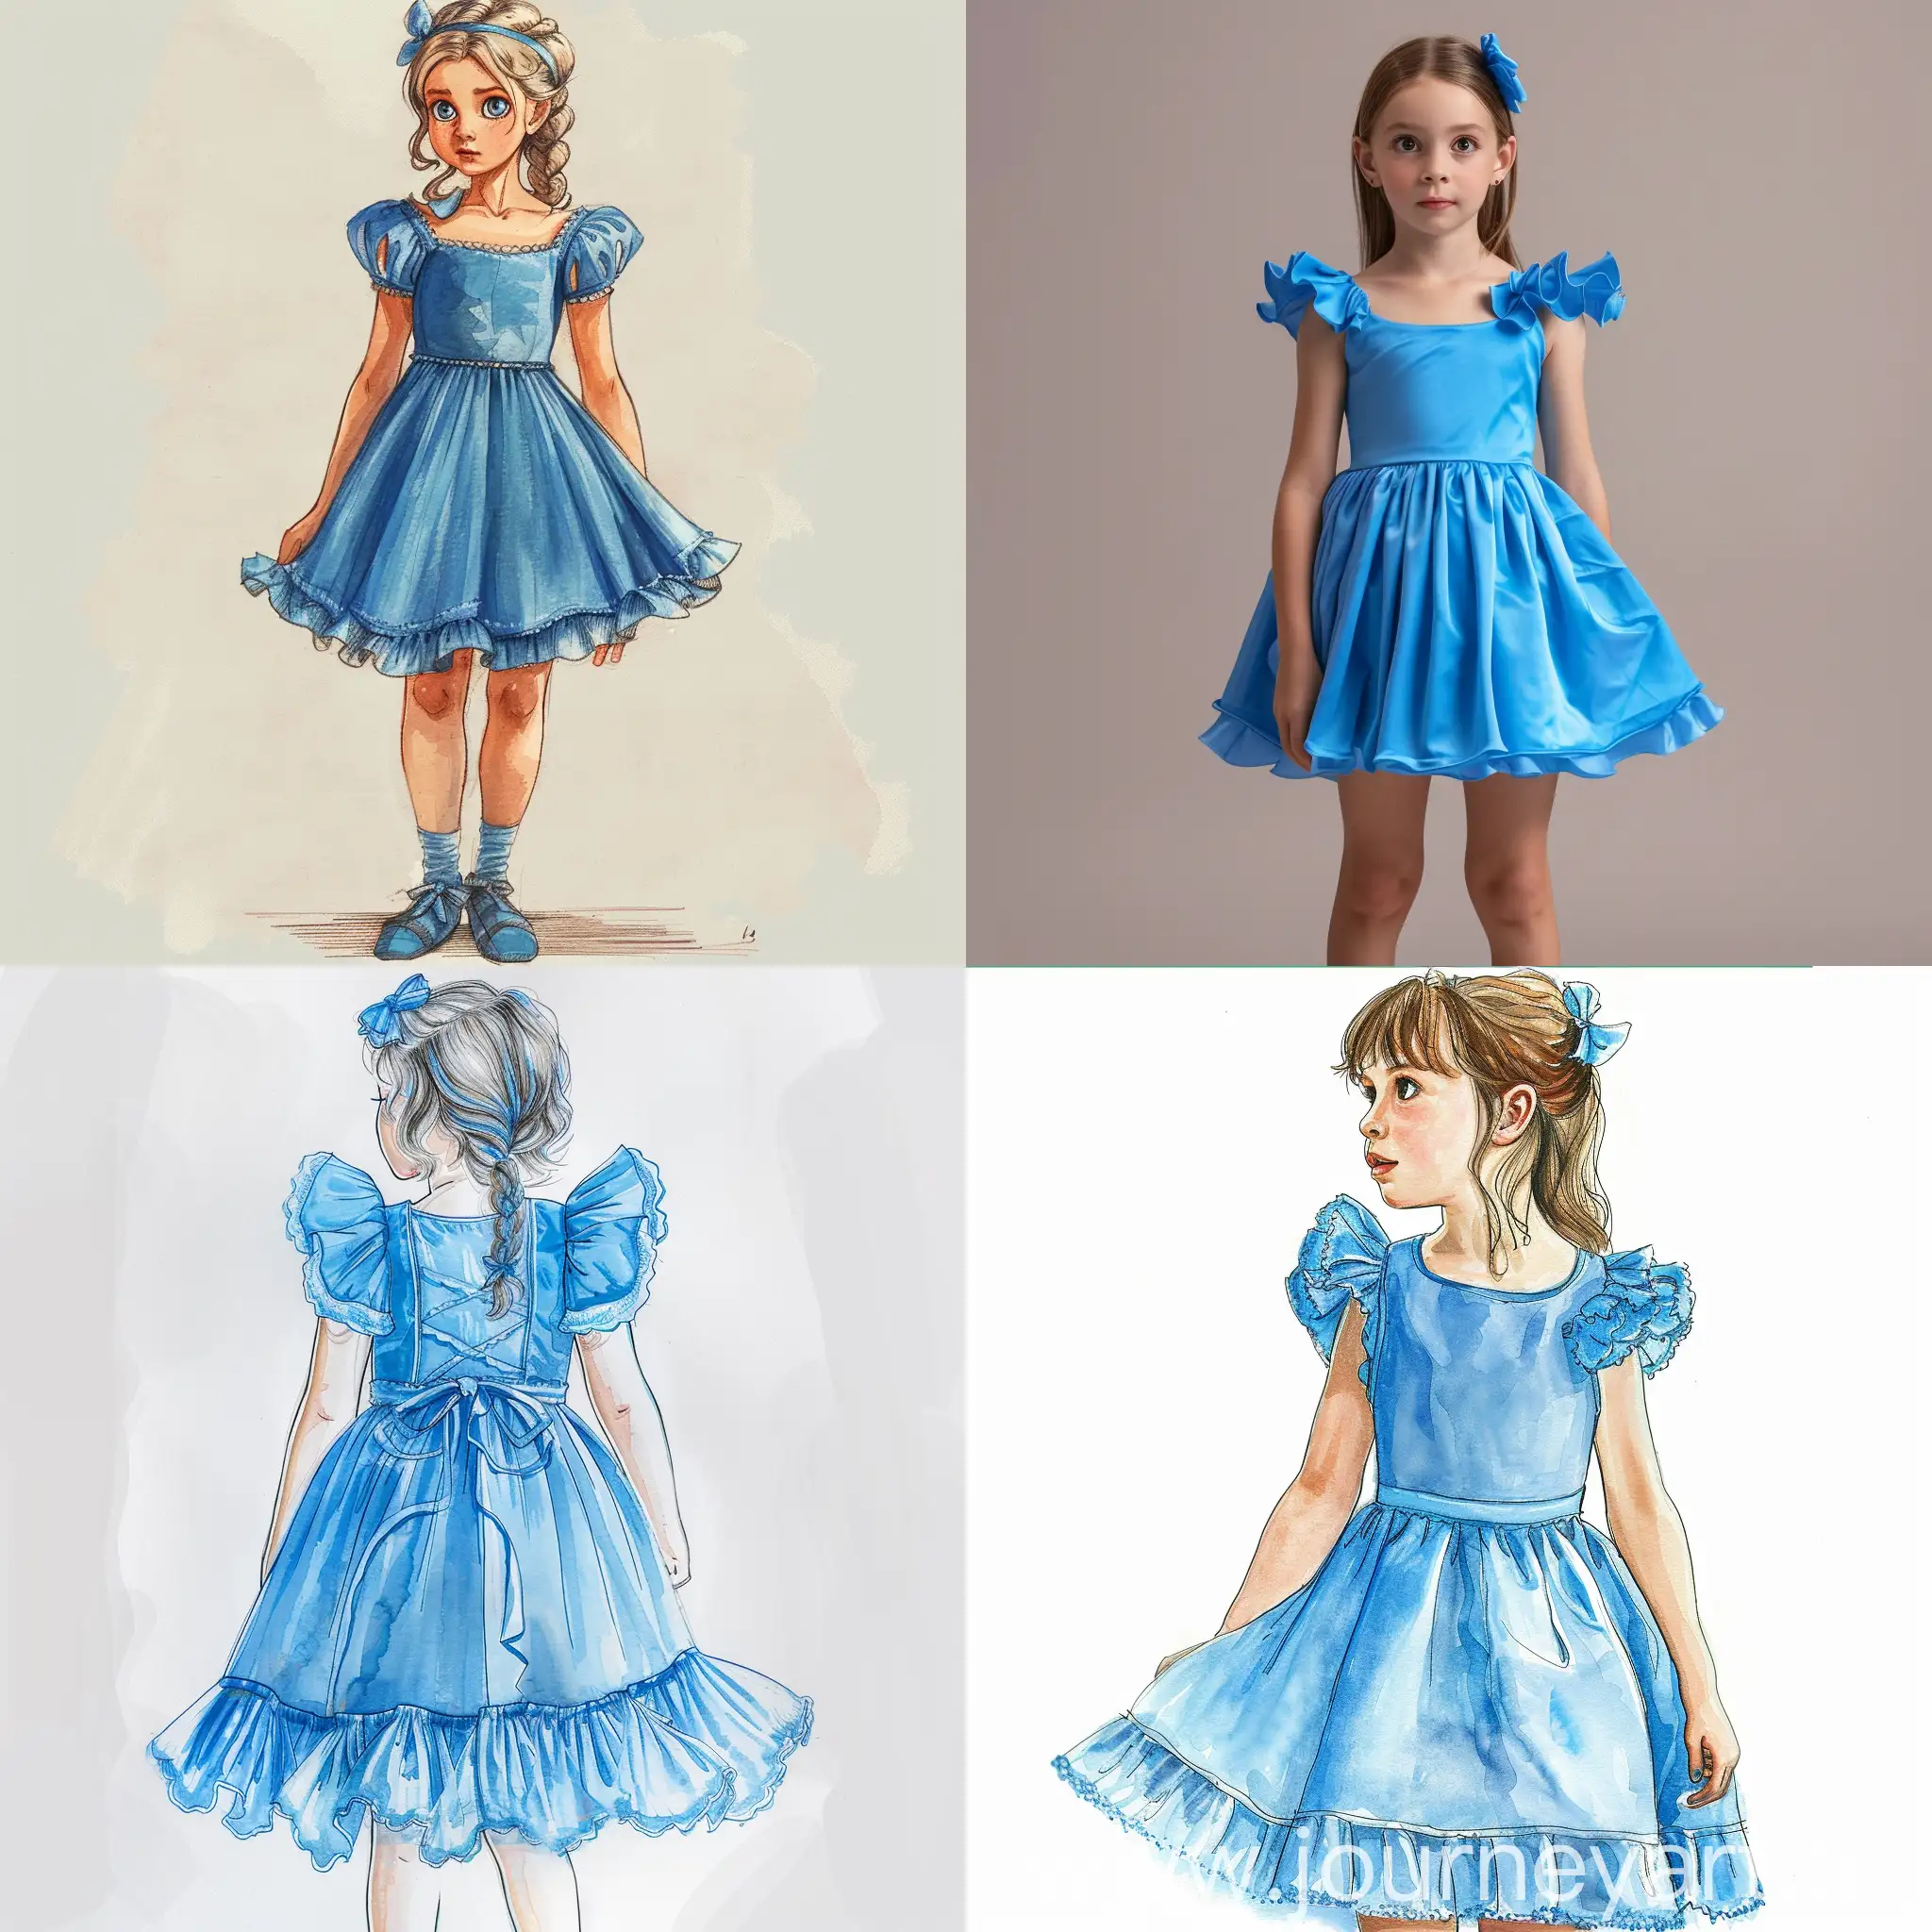 تصميم لفتاة صغيرة، فستان أميرة قصير إلى الركبة، ازرق اللون،  بدون، وعلى كل منطقة افوق كشكشة، أكمام، وكتف نازل